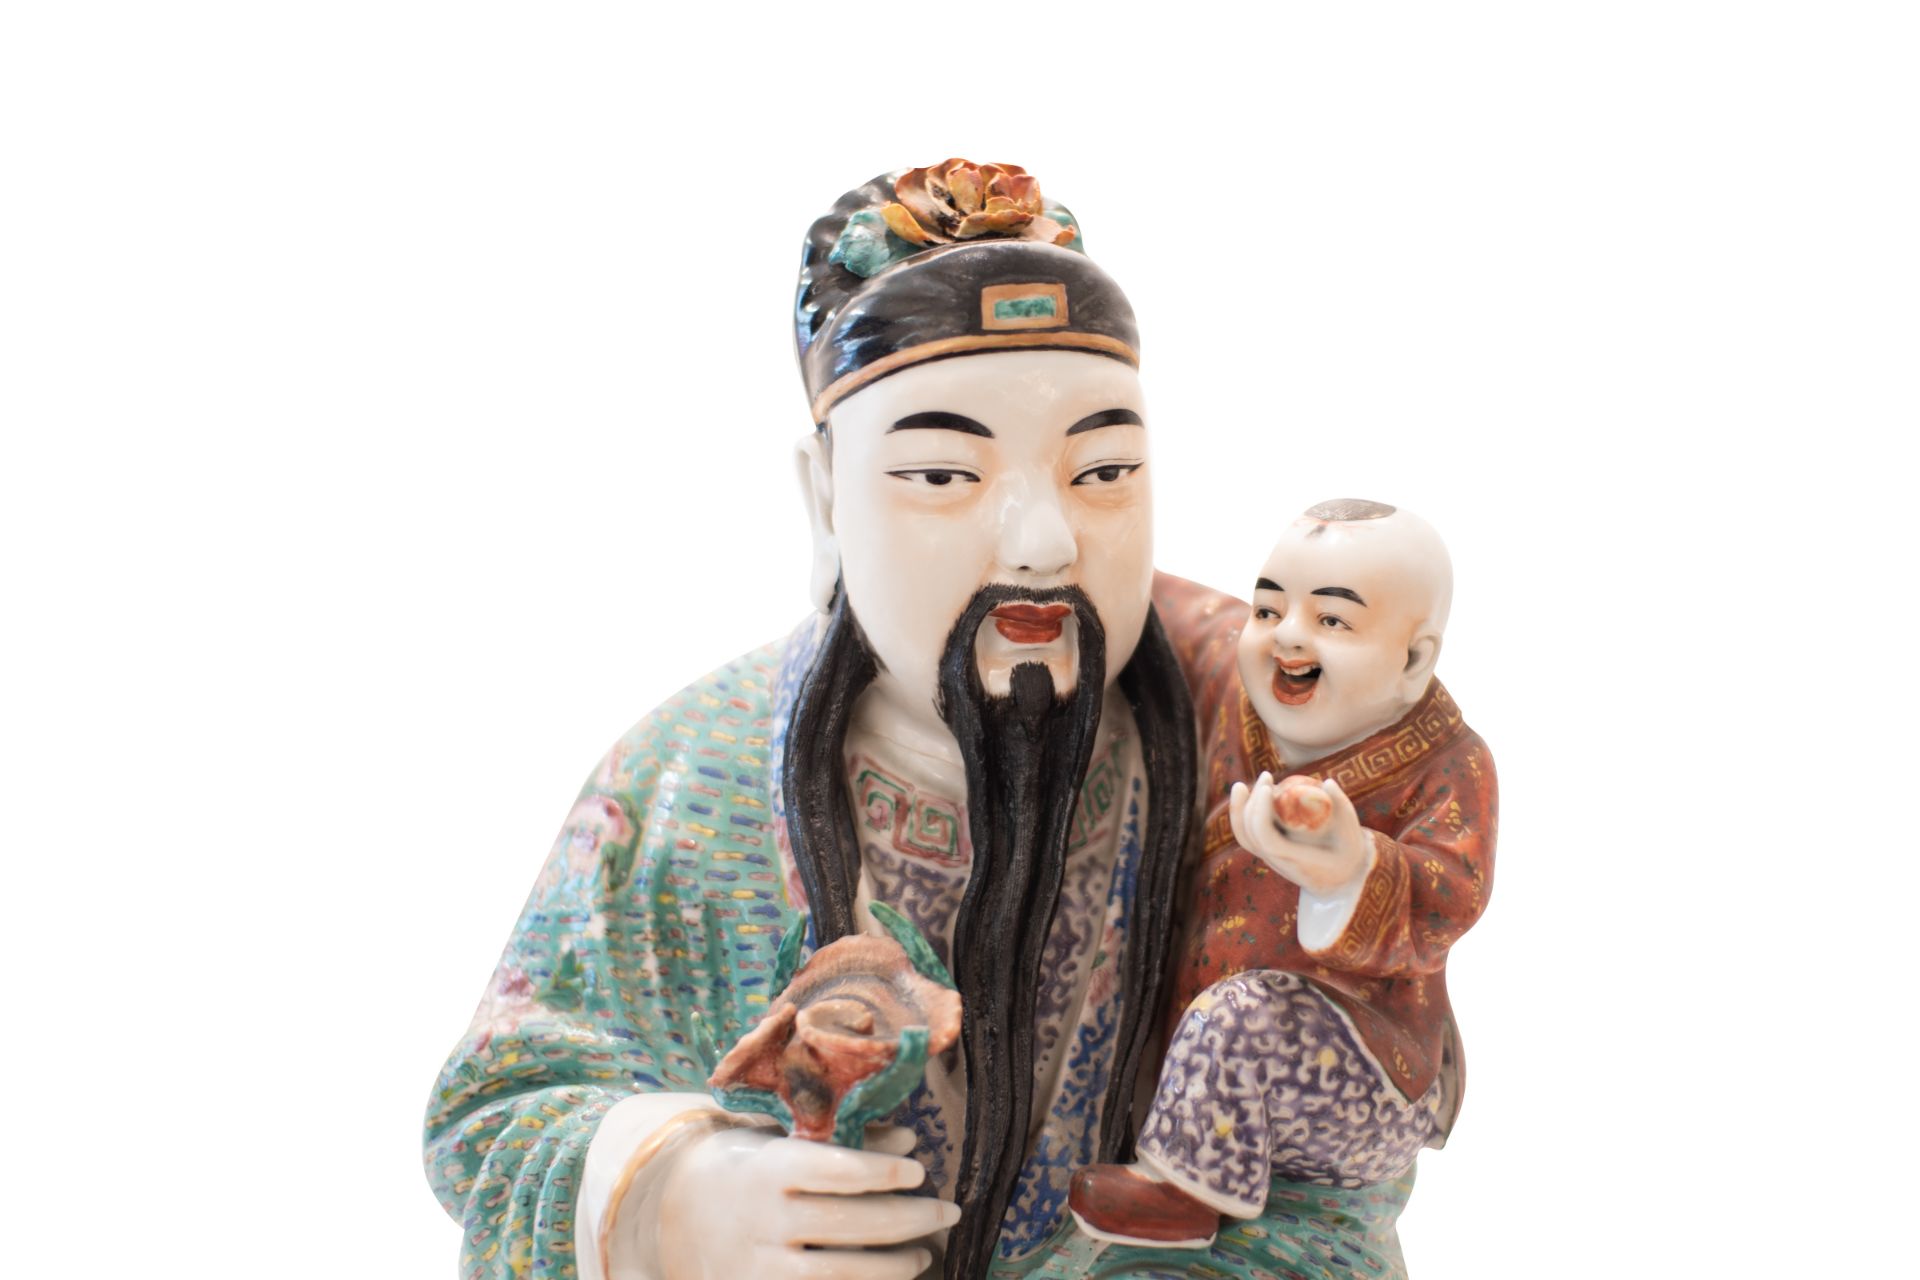 Asian Priest with Child | Asiatischer Priester mit Kind - Bild 2 aus 9